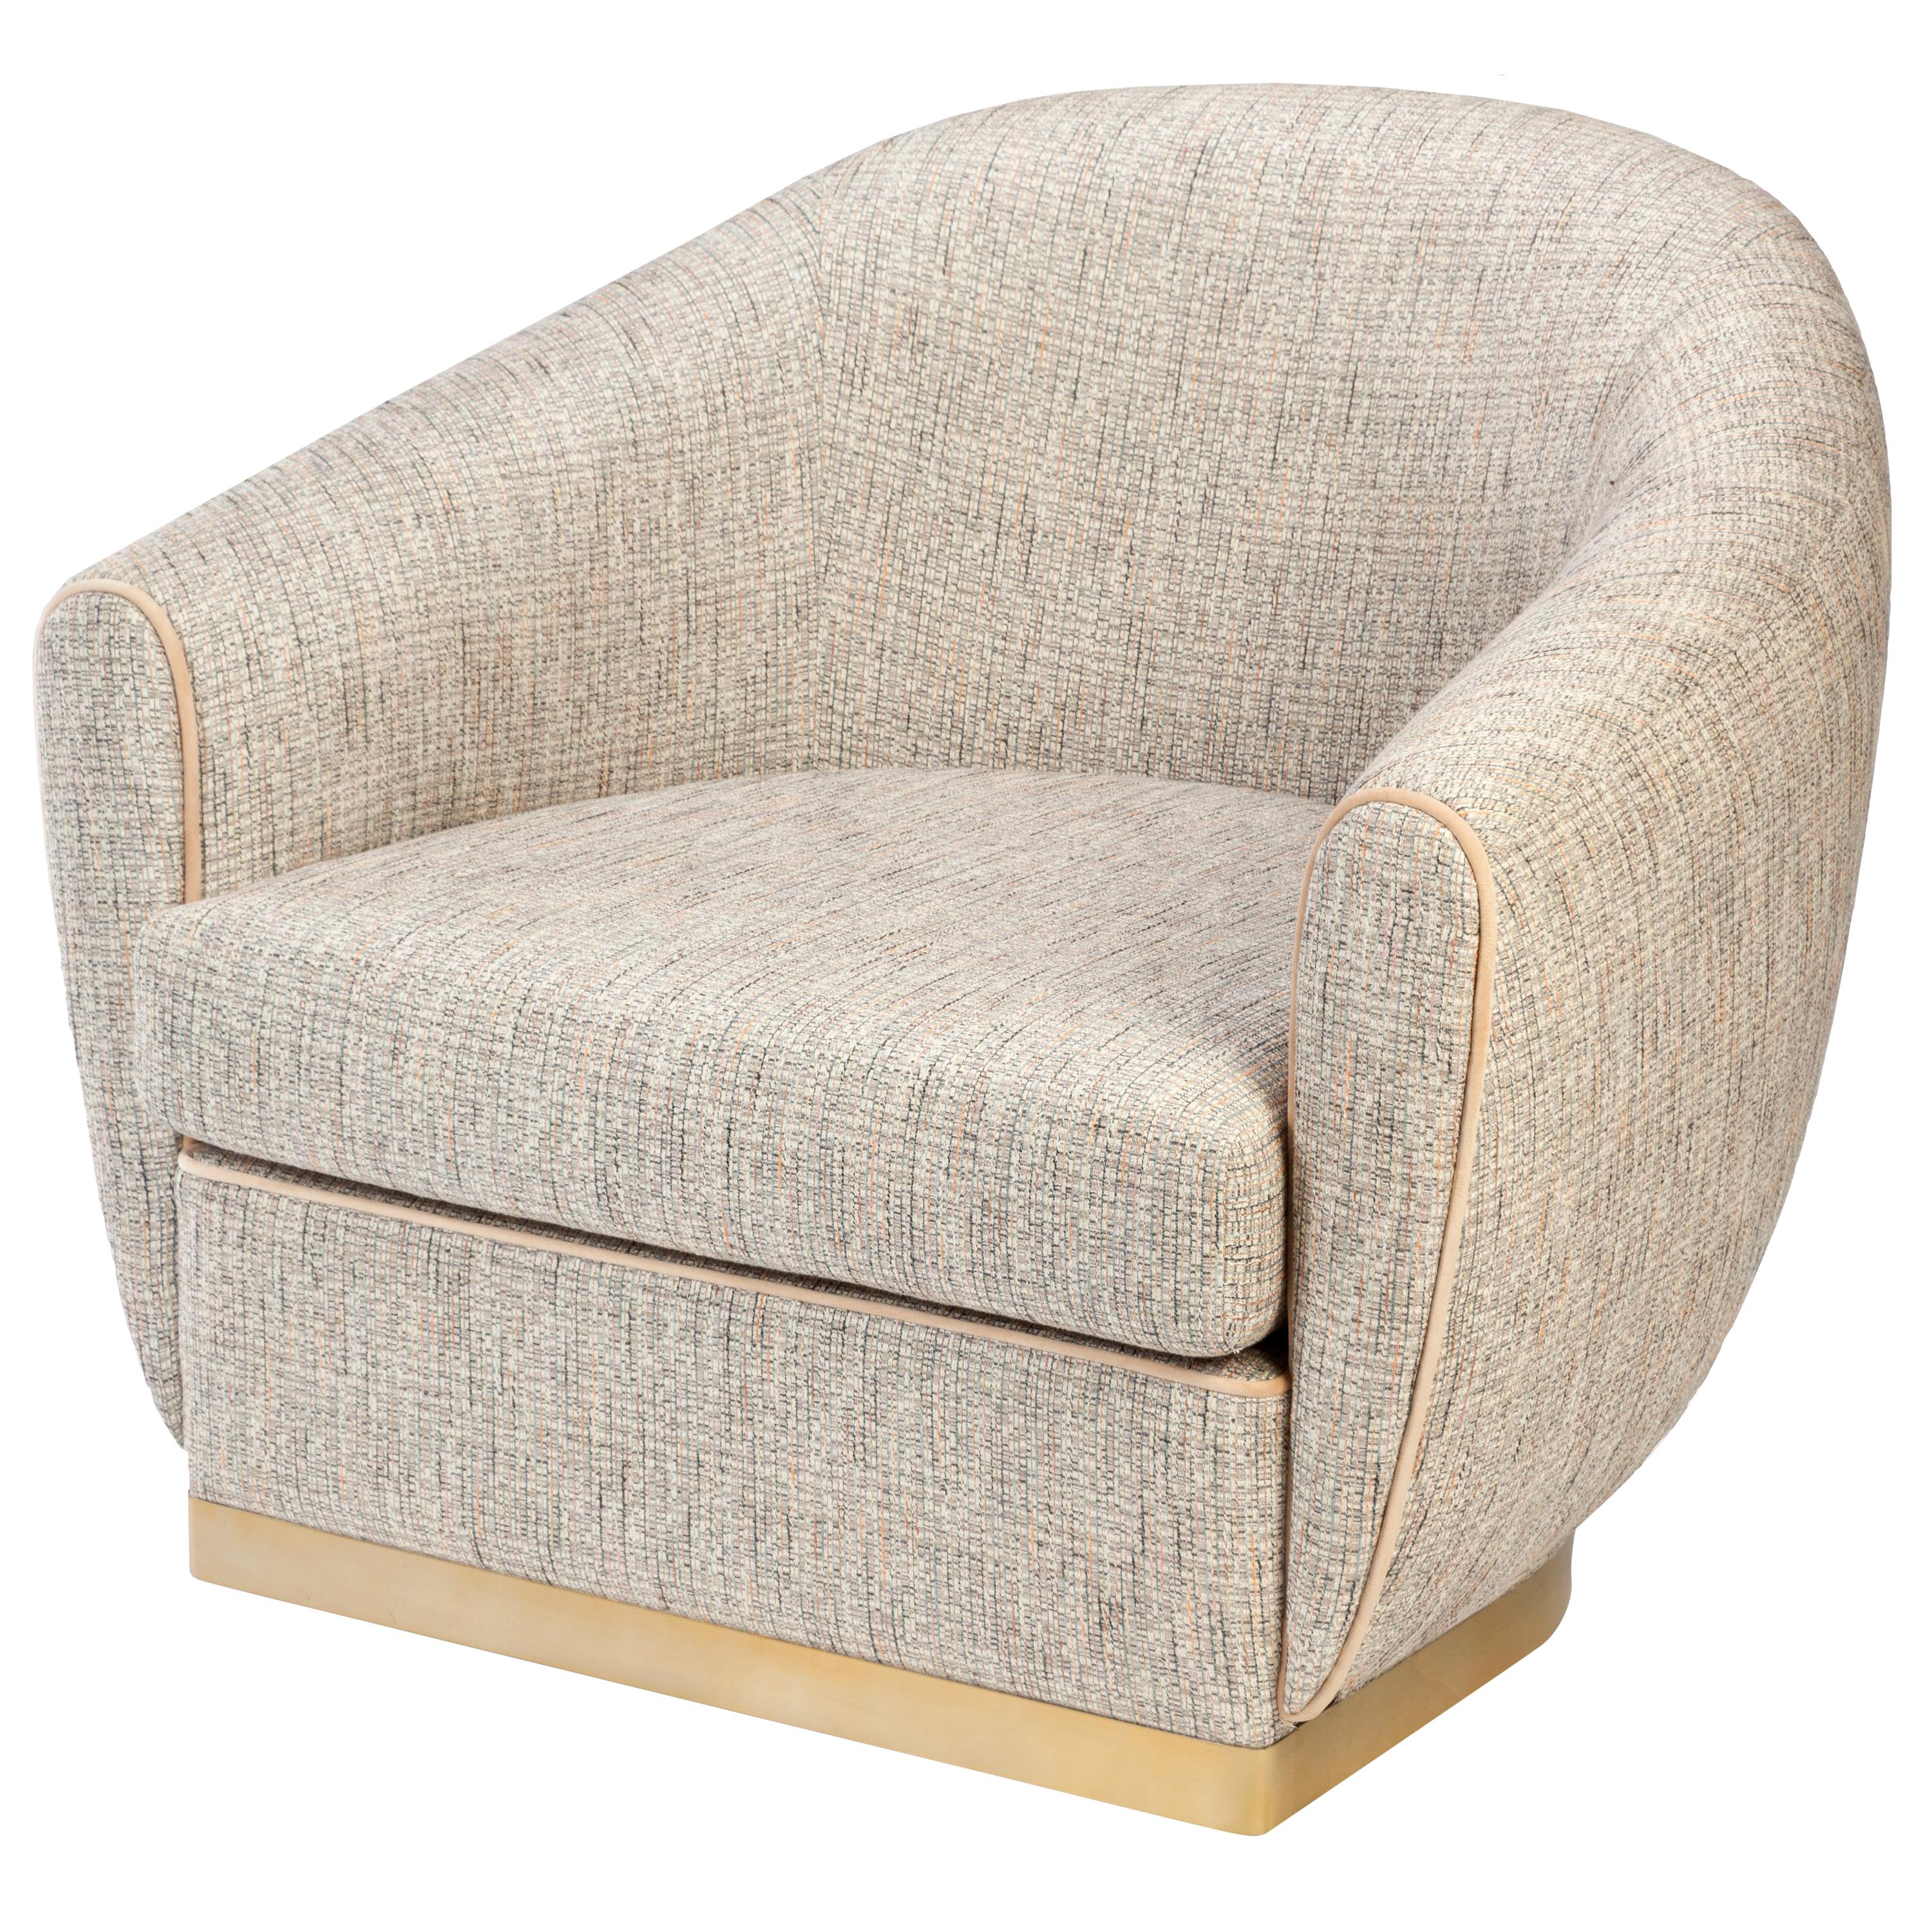 Der stilvolle und elegante Sessel Grace ist durch seine perfekte Verarbeitung äußerst bequem. Mit seinen glatten Kanten hat Grace definitiv ein vertrautes Retro-Gefühl. Eine perfekte Kombination aus hochkomfortabler und perfekt zugeschnittener